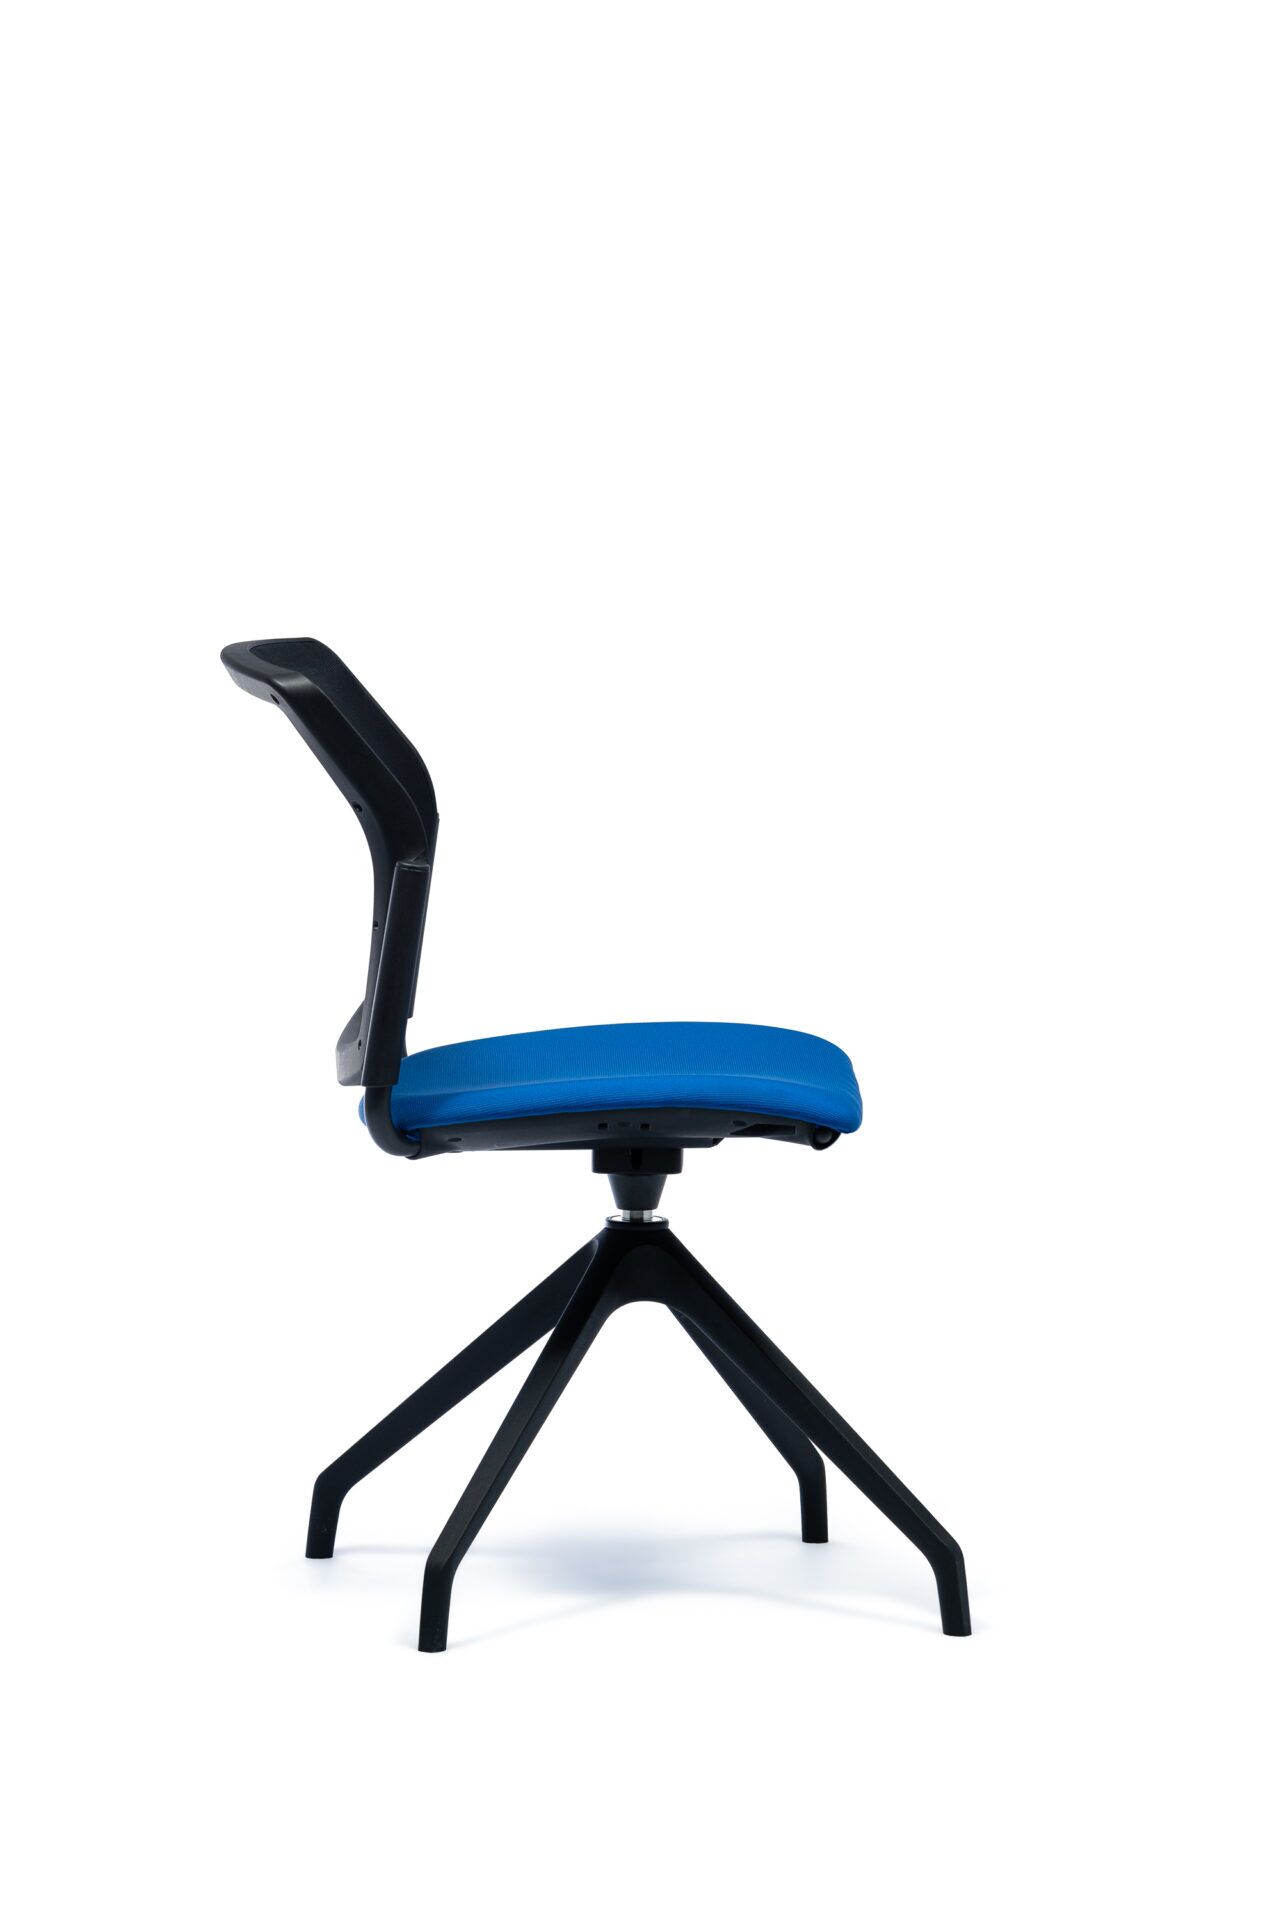 Czarny fotel biurowy z niebieskim siedzeniem od boku 4job BGroup